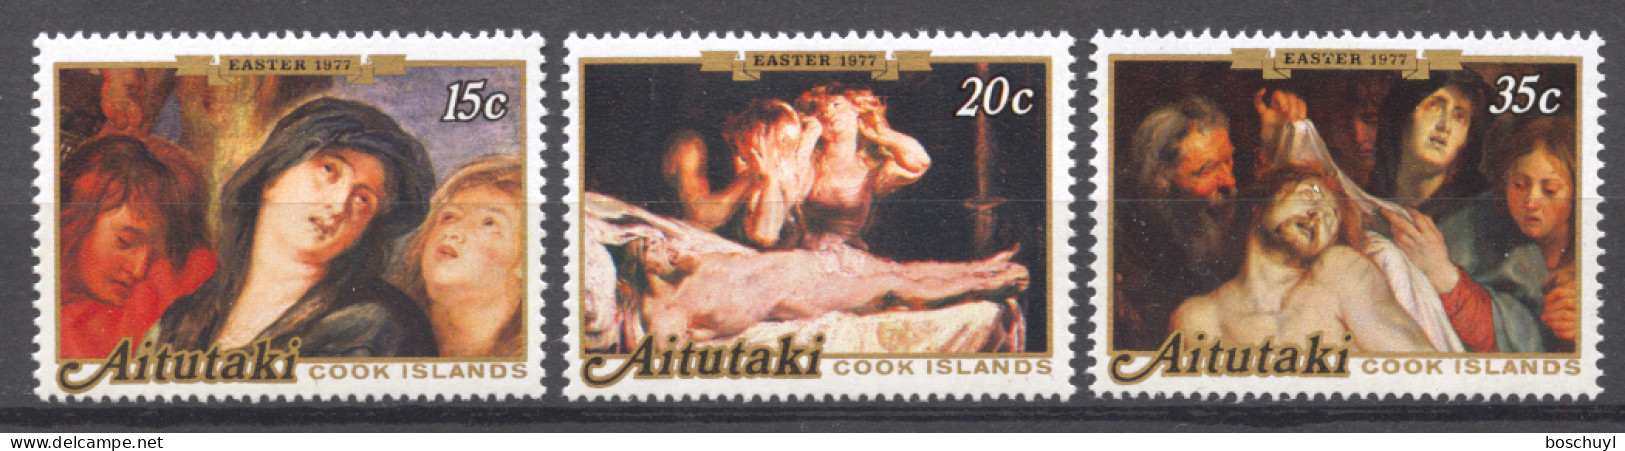 Aitutaki, 1977, Rubens Paintings, Art, MNH, Michel 251-253 - Aitutaki